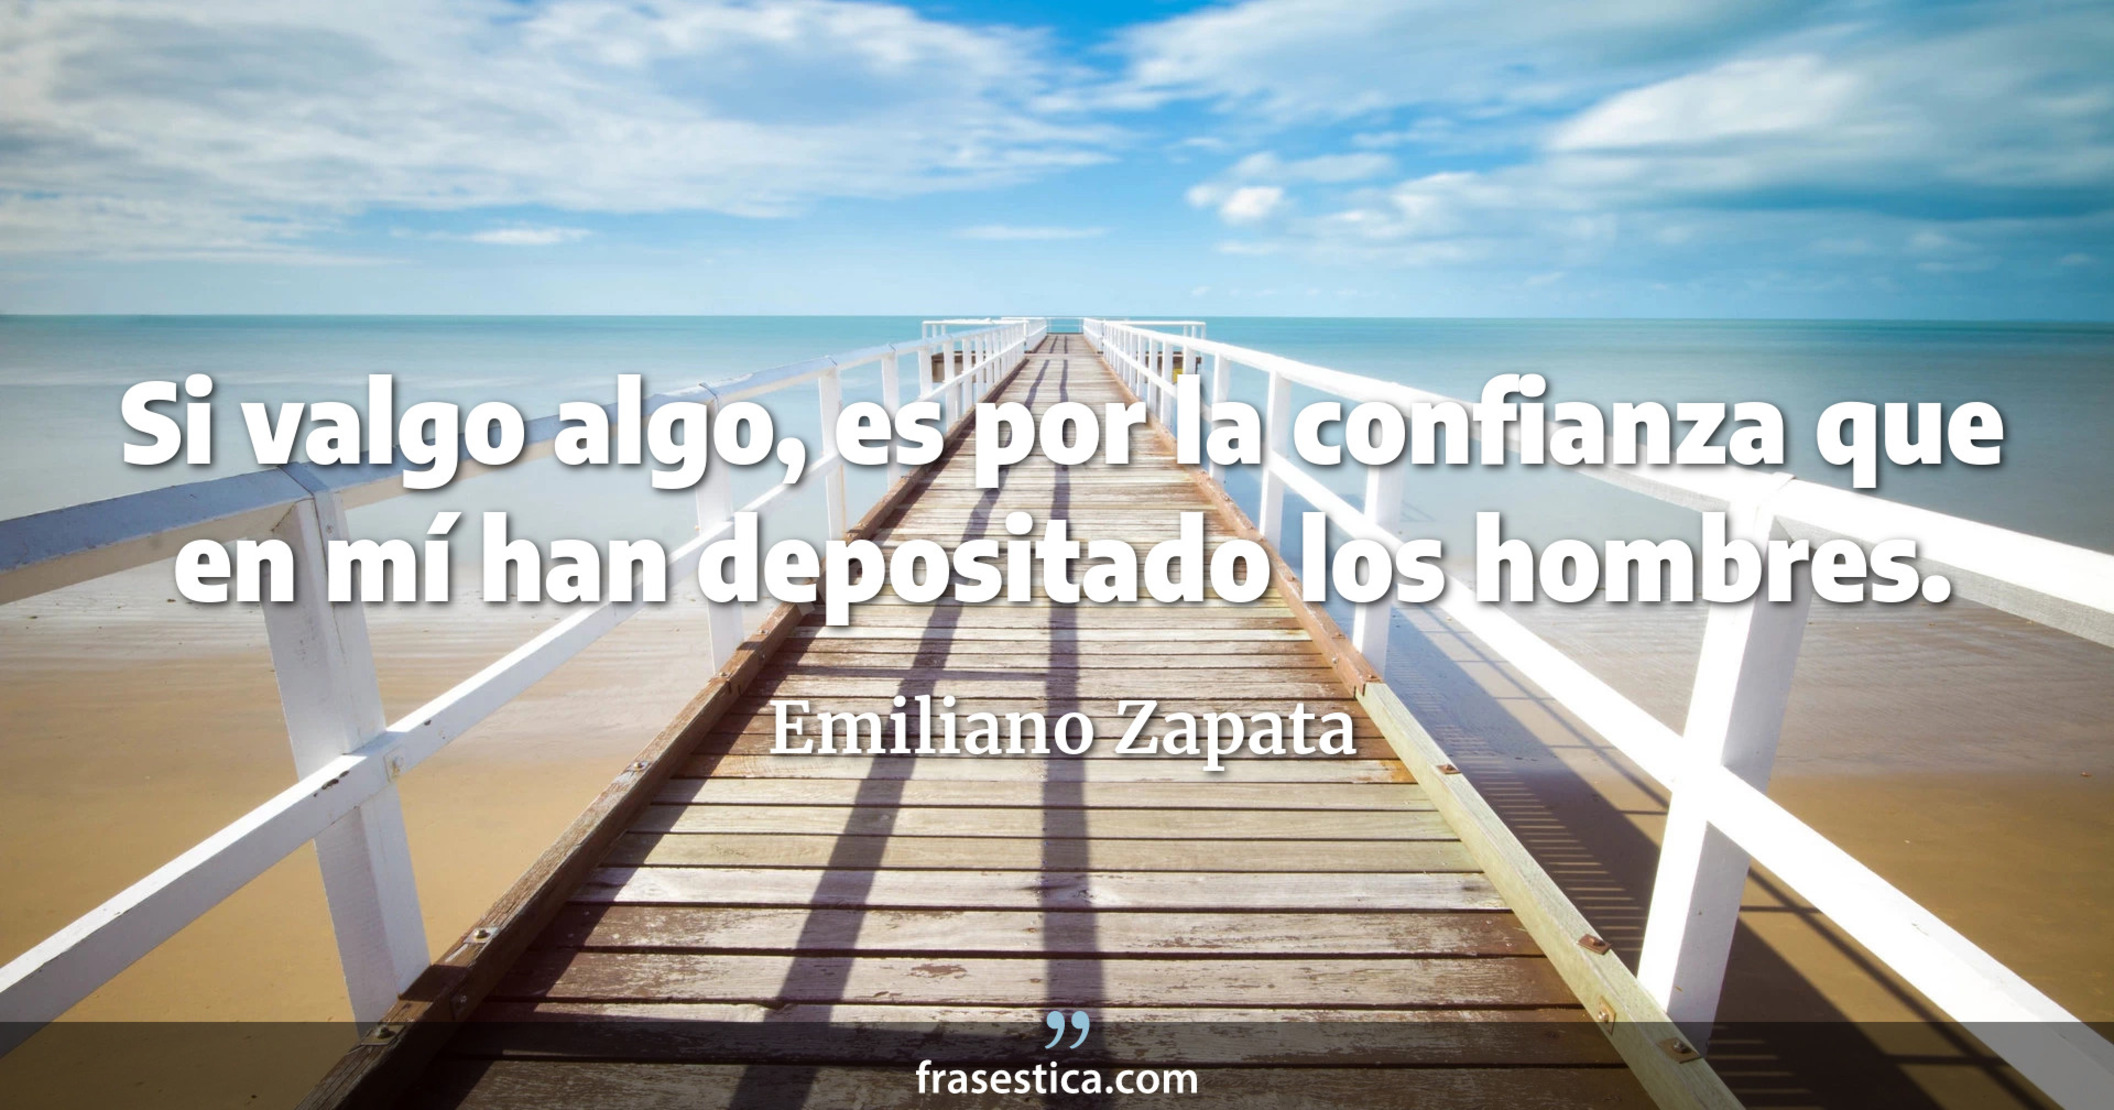 Si valgo algo, es por la confianza que en mí han depositado los hombres. - Emiliano Zapata